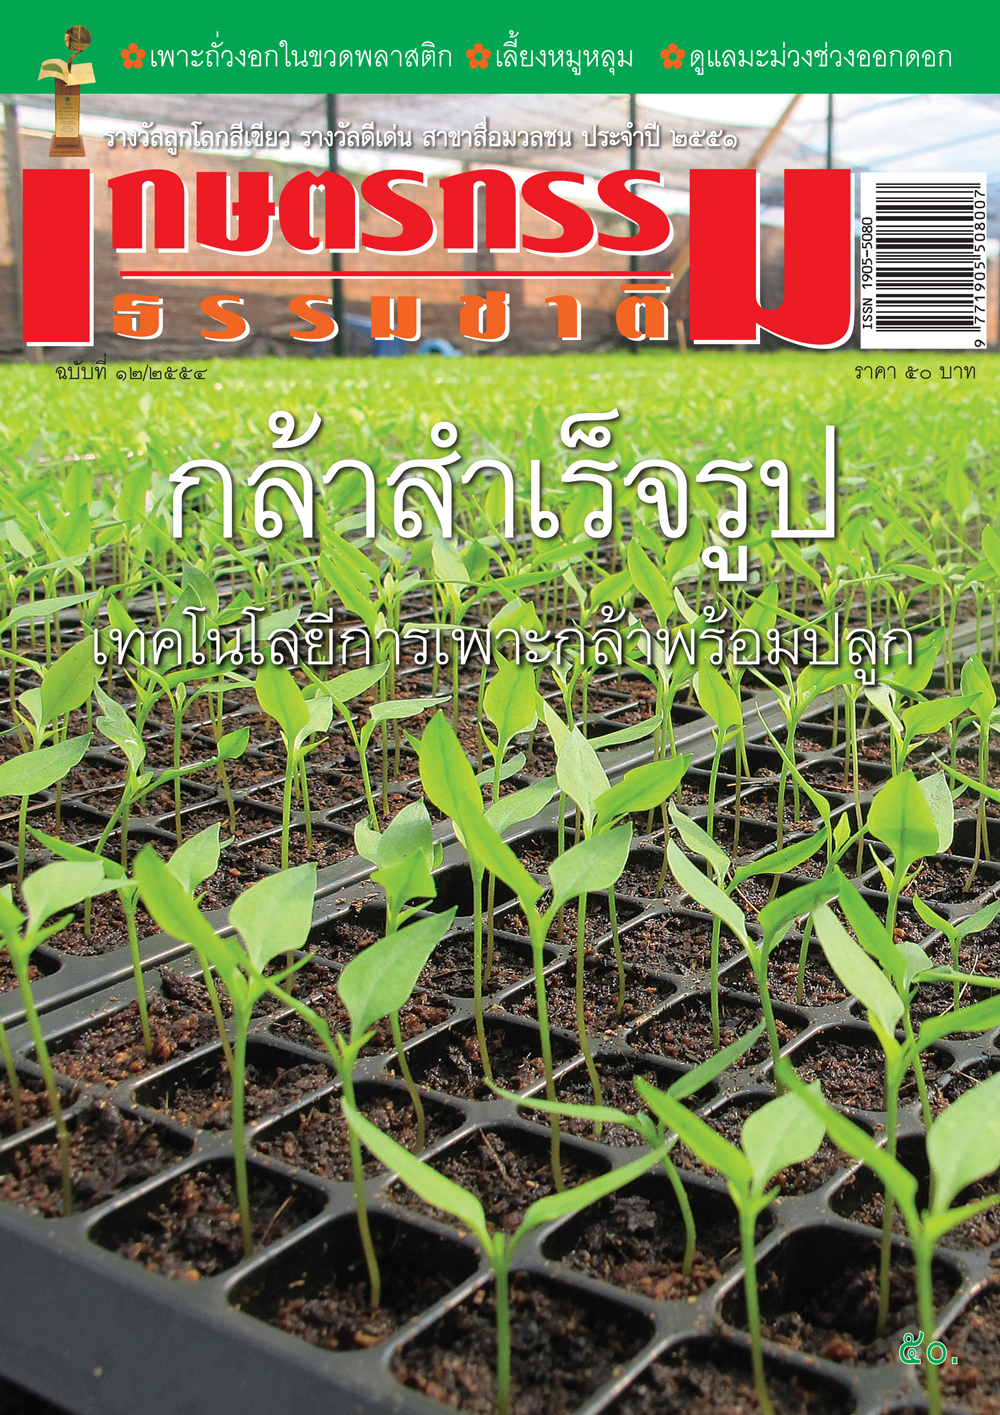 วารสารเกษตรกรรมธรรมชาติ ฉบับที่ 12/2554 กล้าสำเร็จรูป เทคโนโลยีกล้าพร้อมปลูก